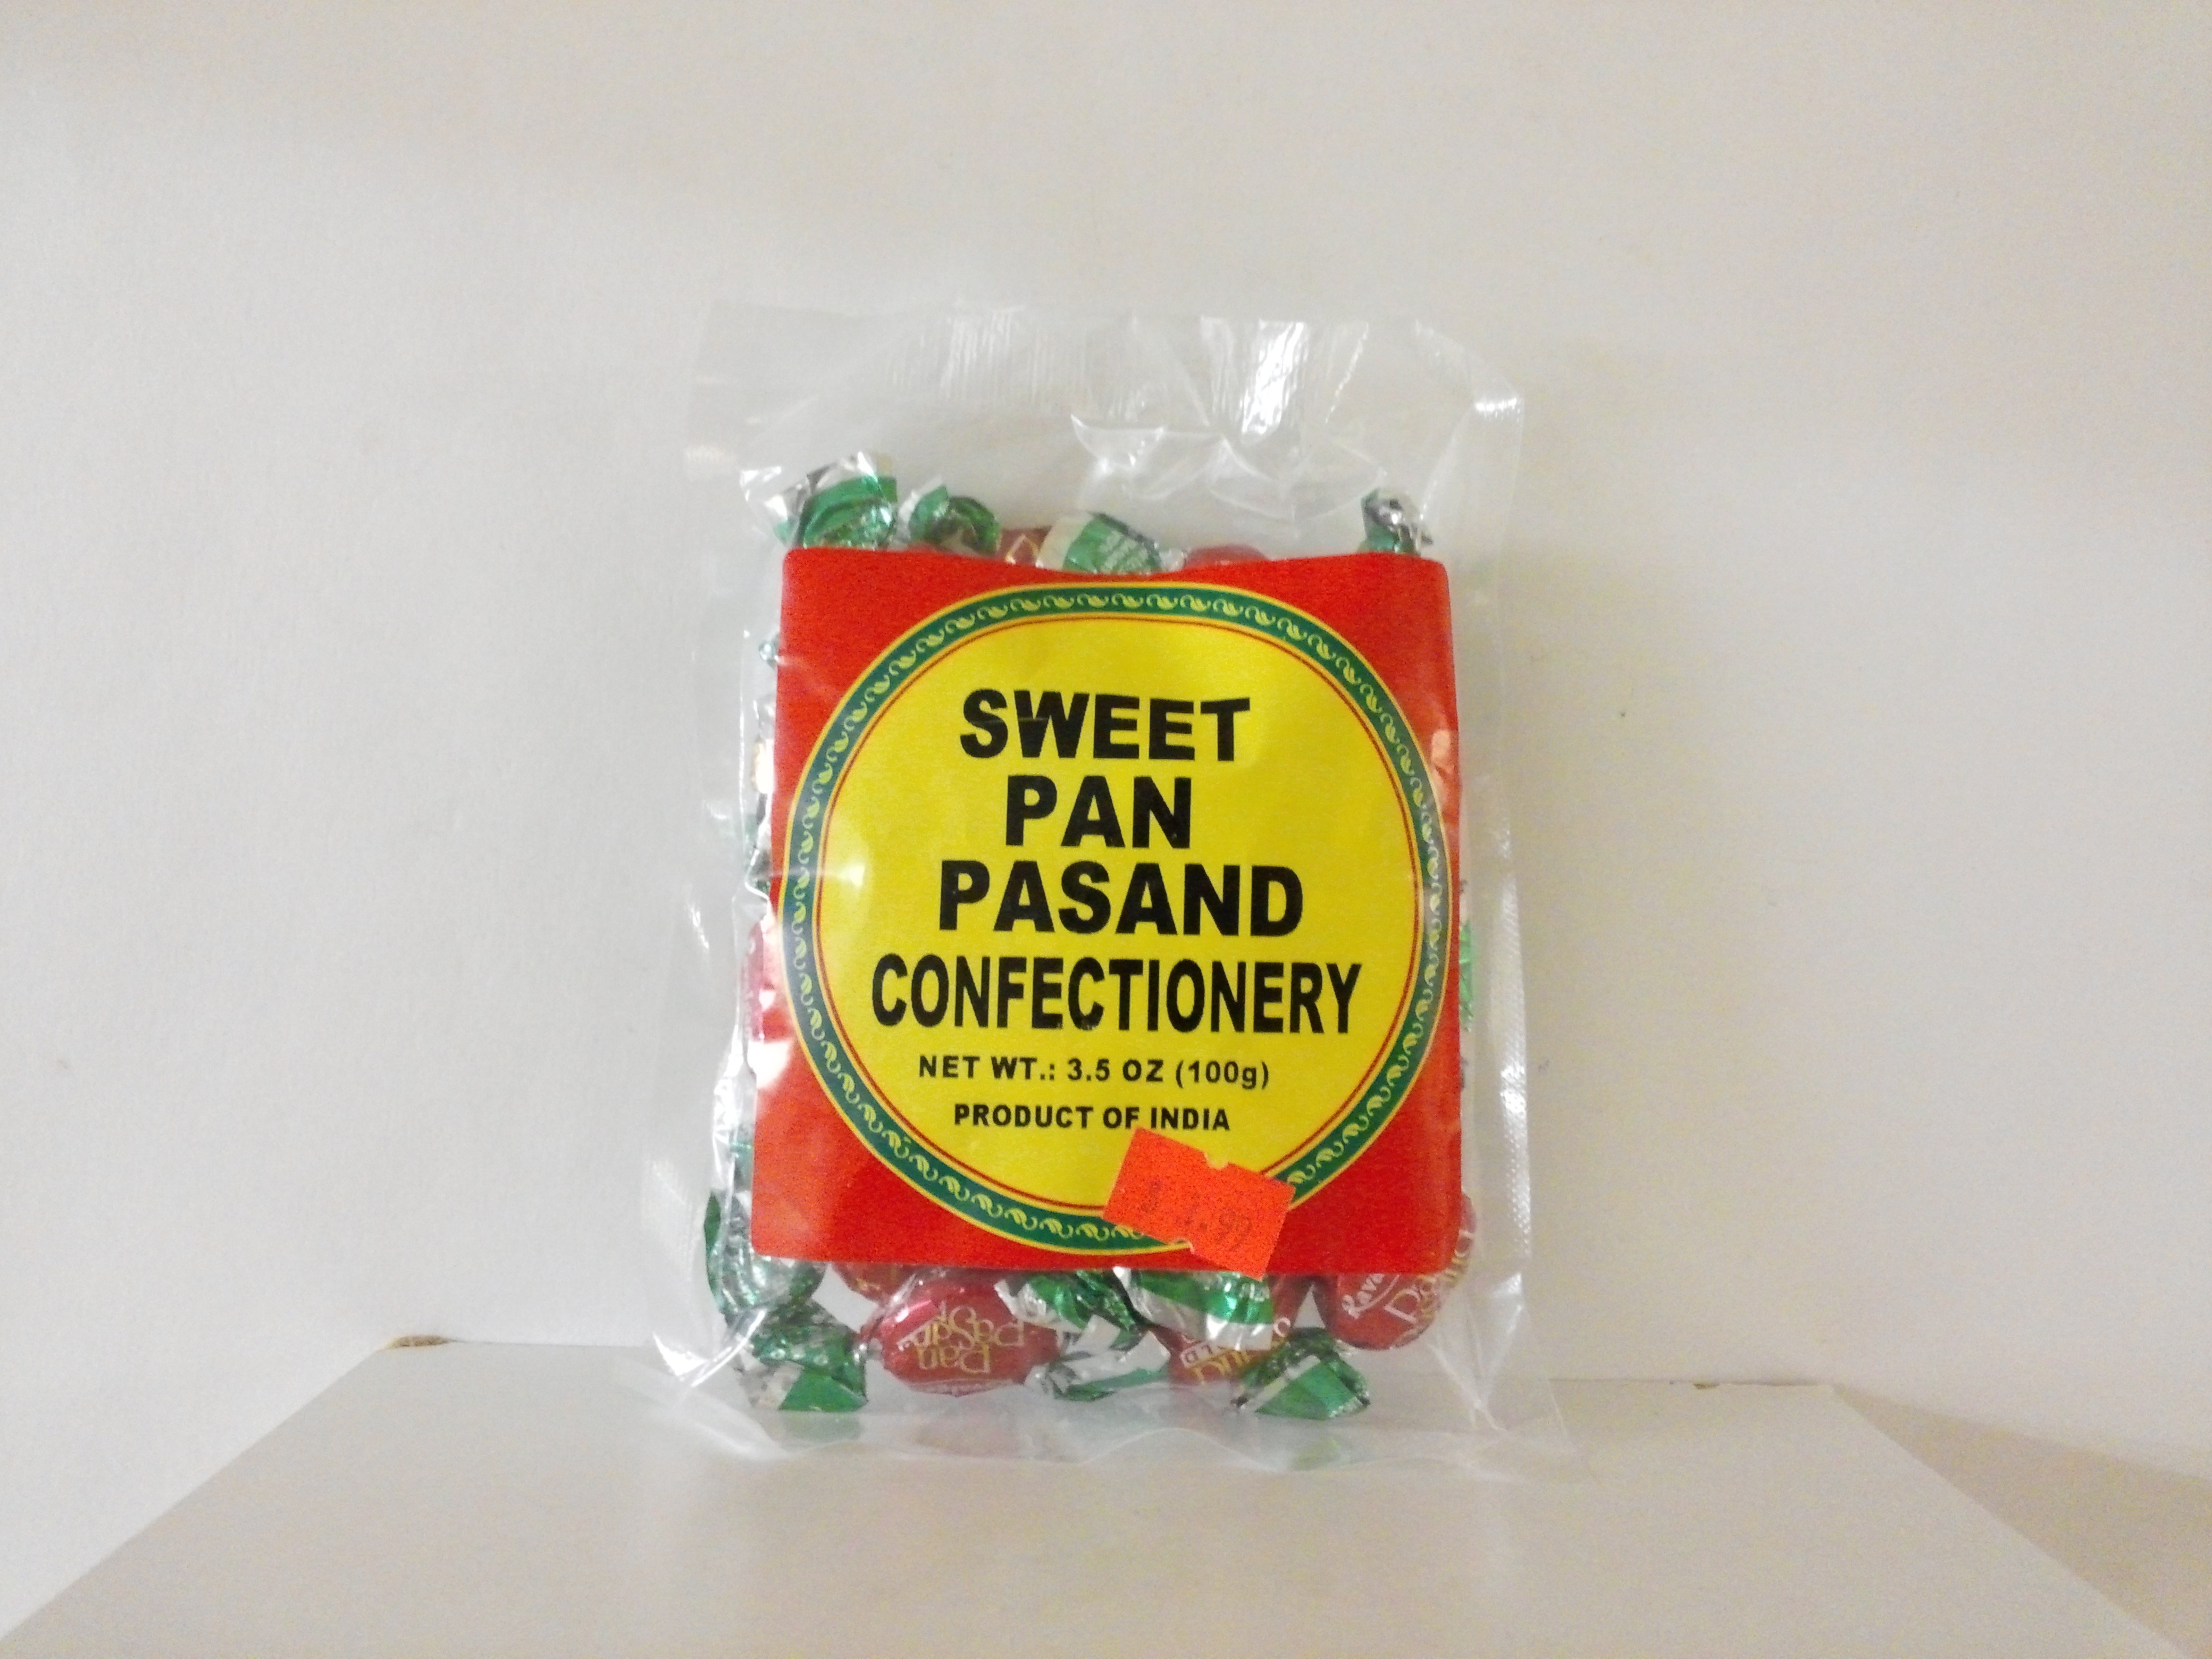 Pan Pasand candy